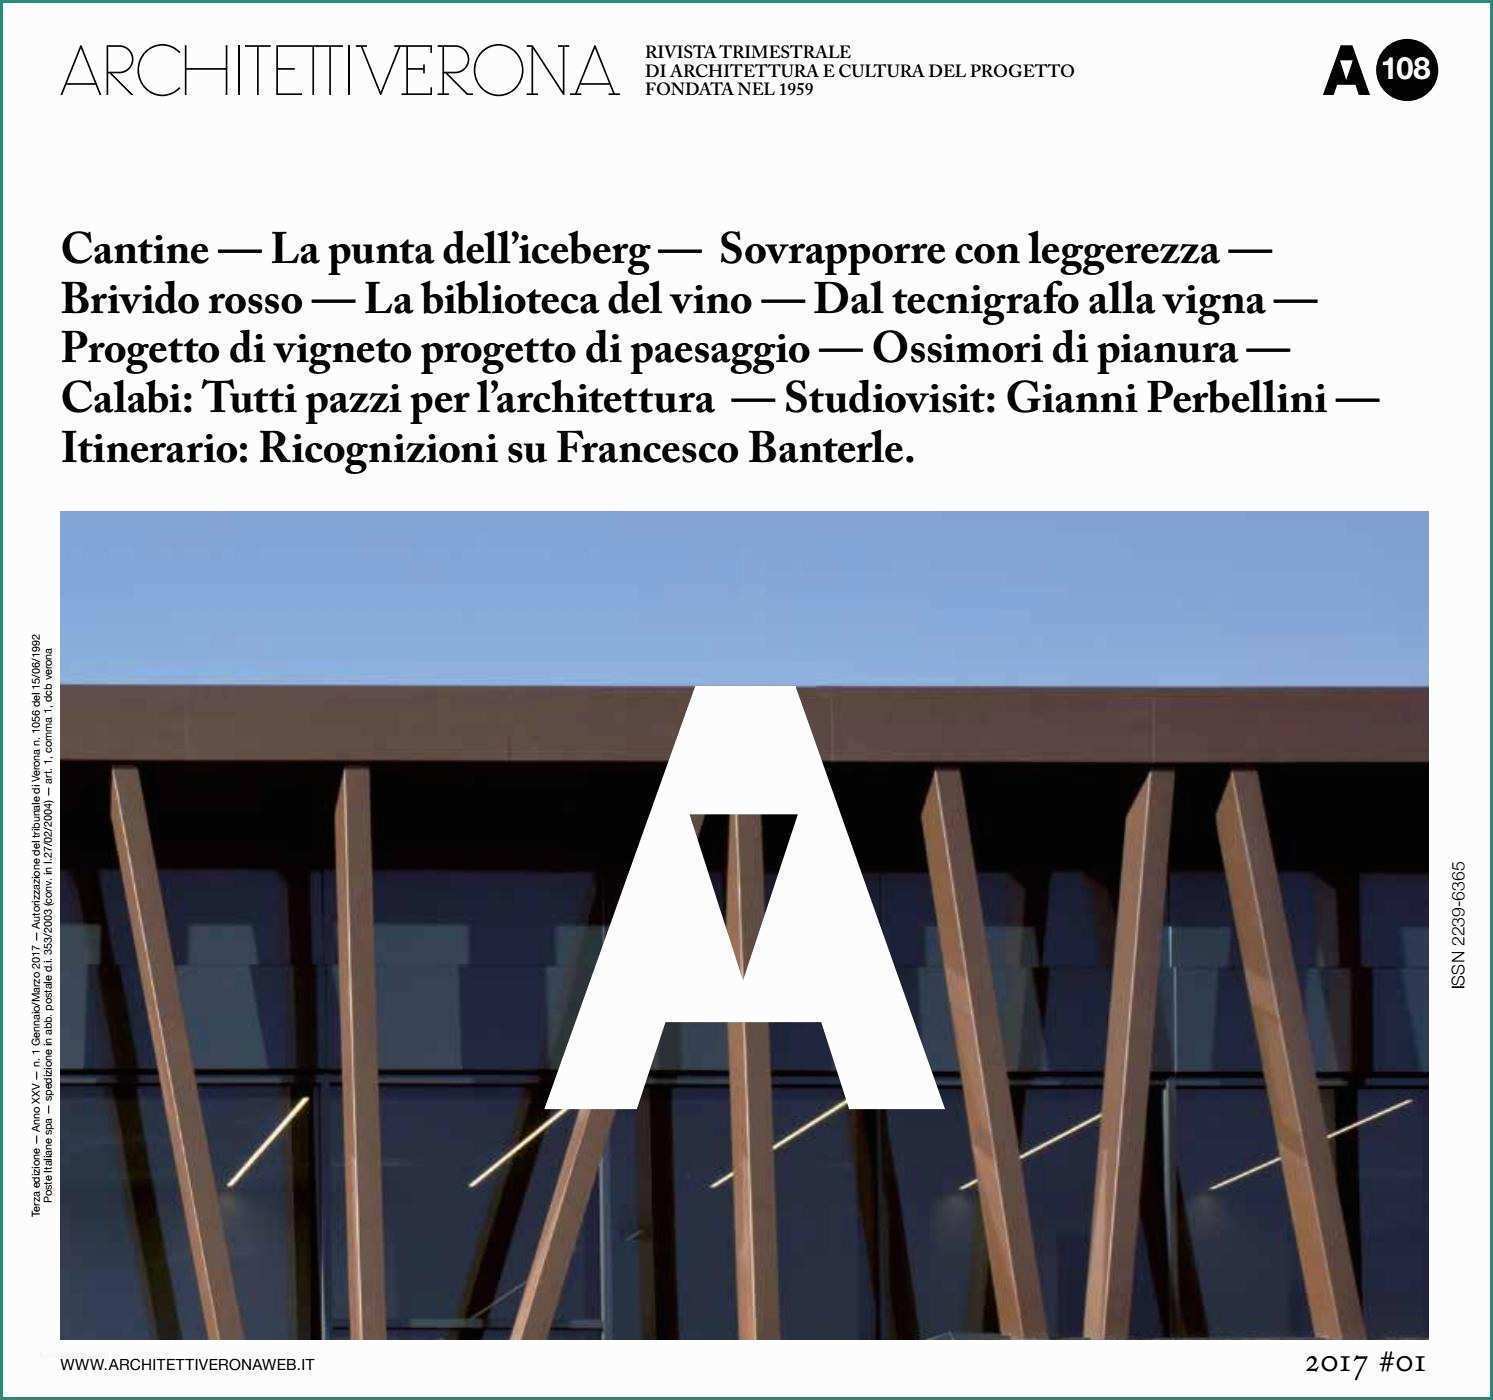 Carrello Saliscale Elettrico Noleggio E Architettiverona 108 by Architettiverona issuu